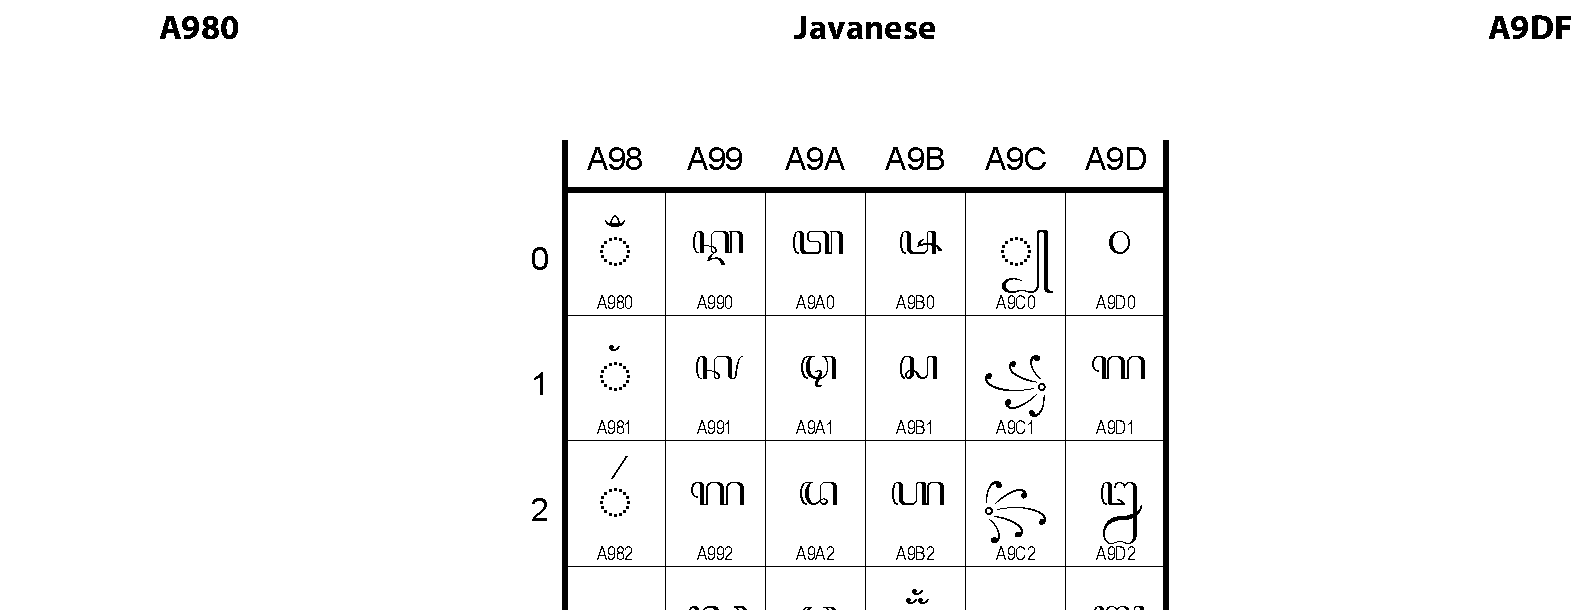 Unicode - Javanese